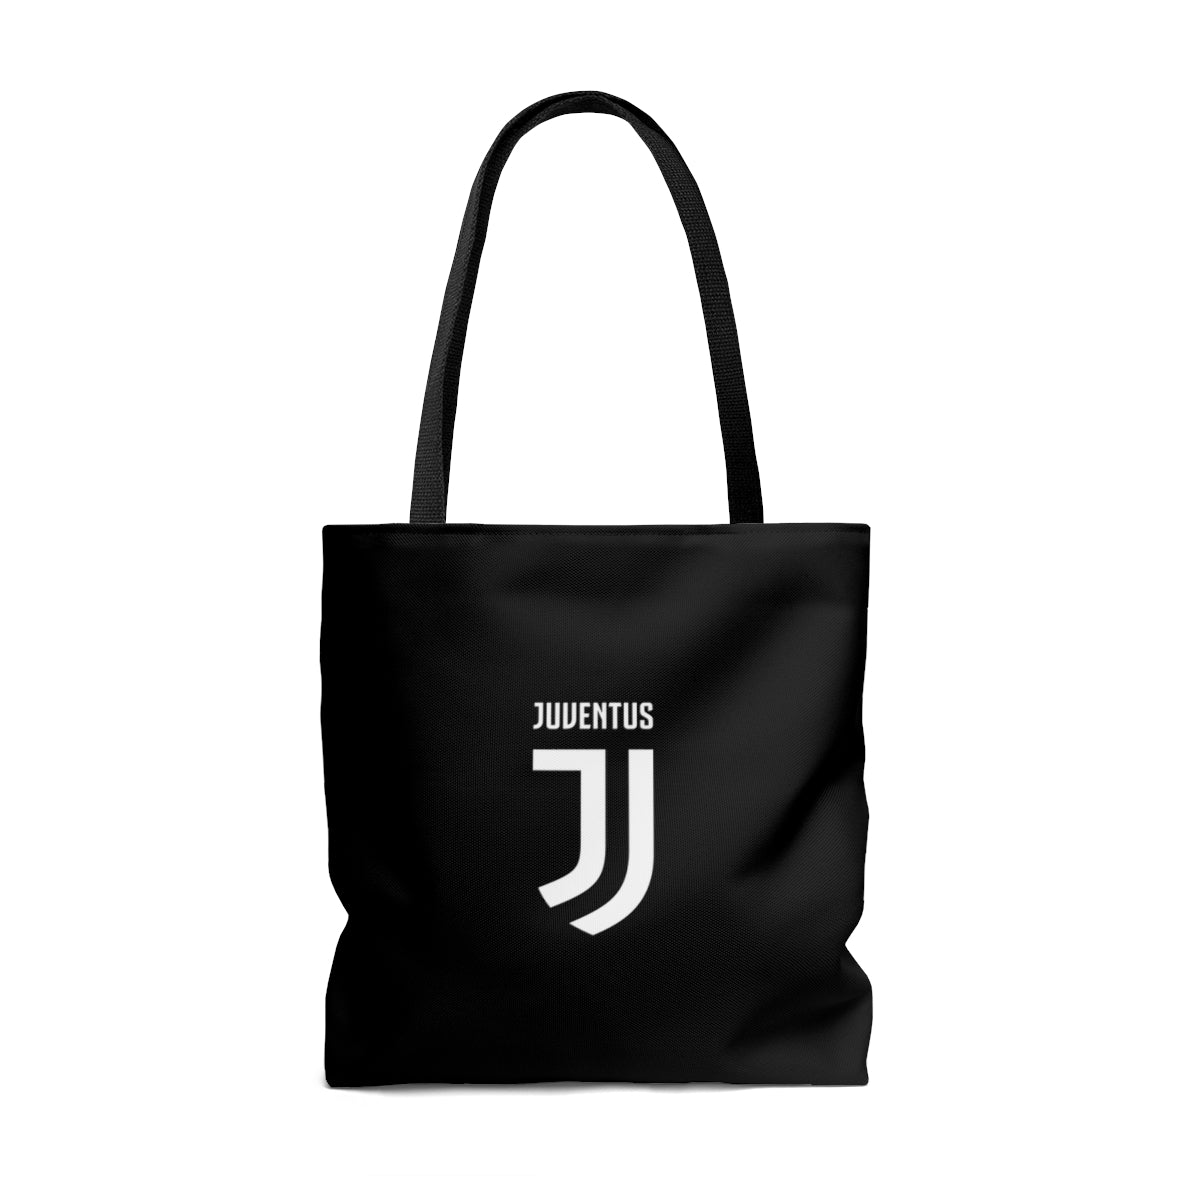 Juventus Tote Bag